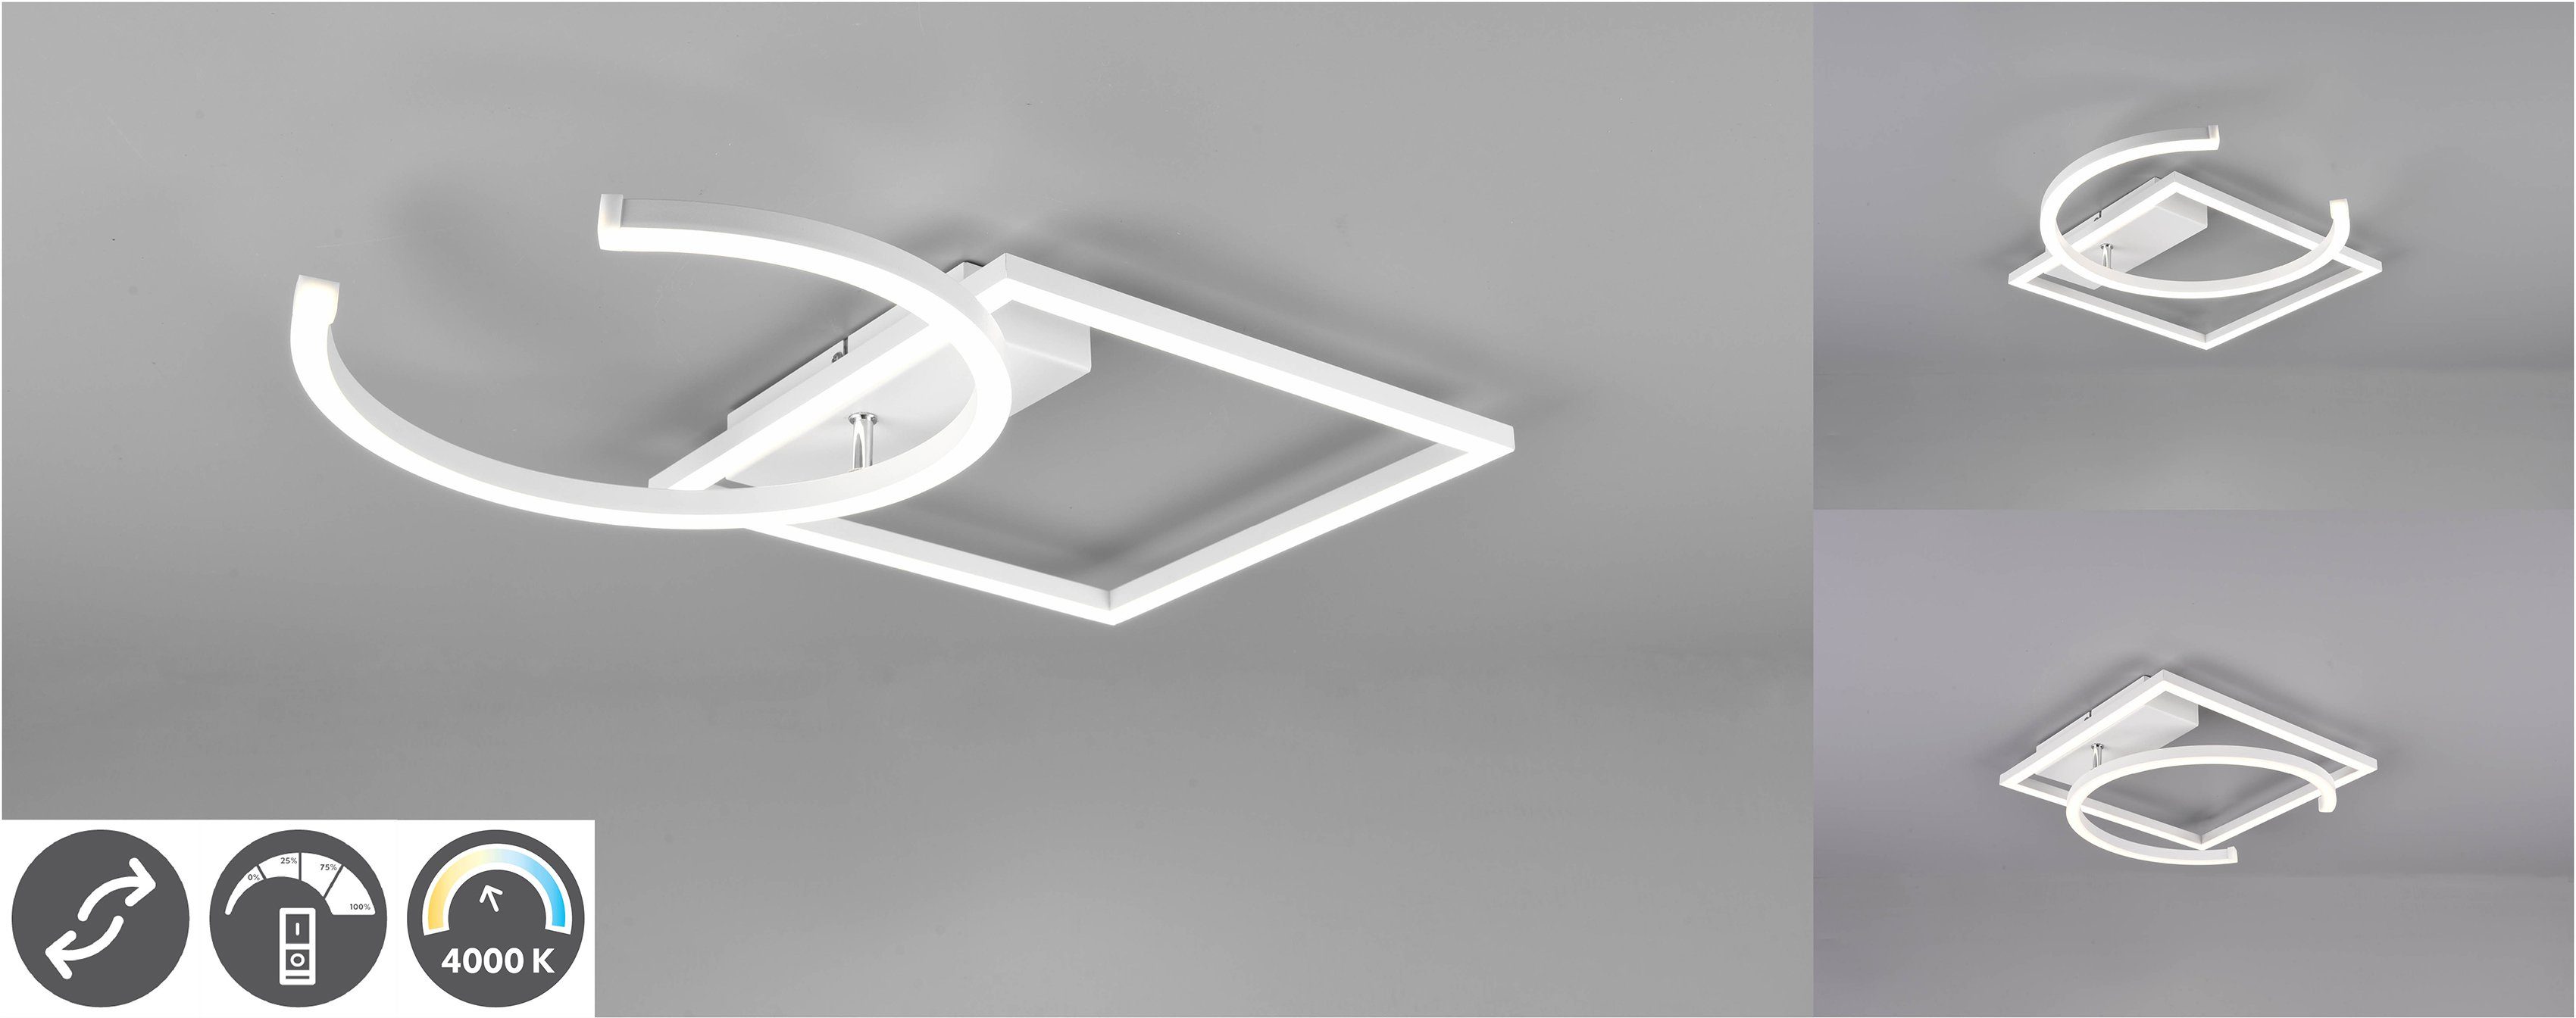 TRIO Leuchten LED Deckenleuchte PIVOT, mehrere Helligkeitsstufen, LED fest integriert, Neutralweiß, über Wandschalter dimmbar, zur Wand-und Deckenmontage geeignet